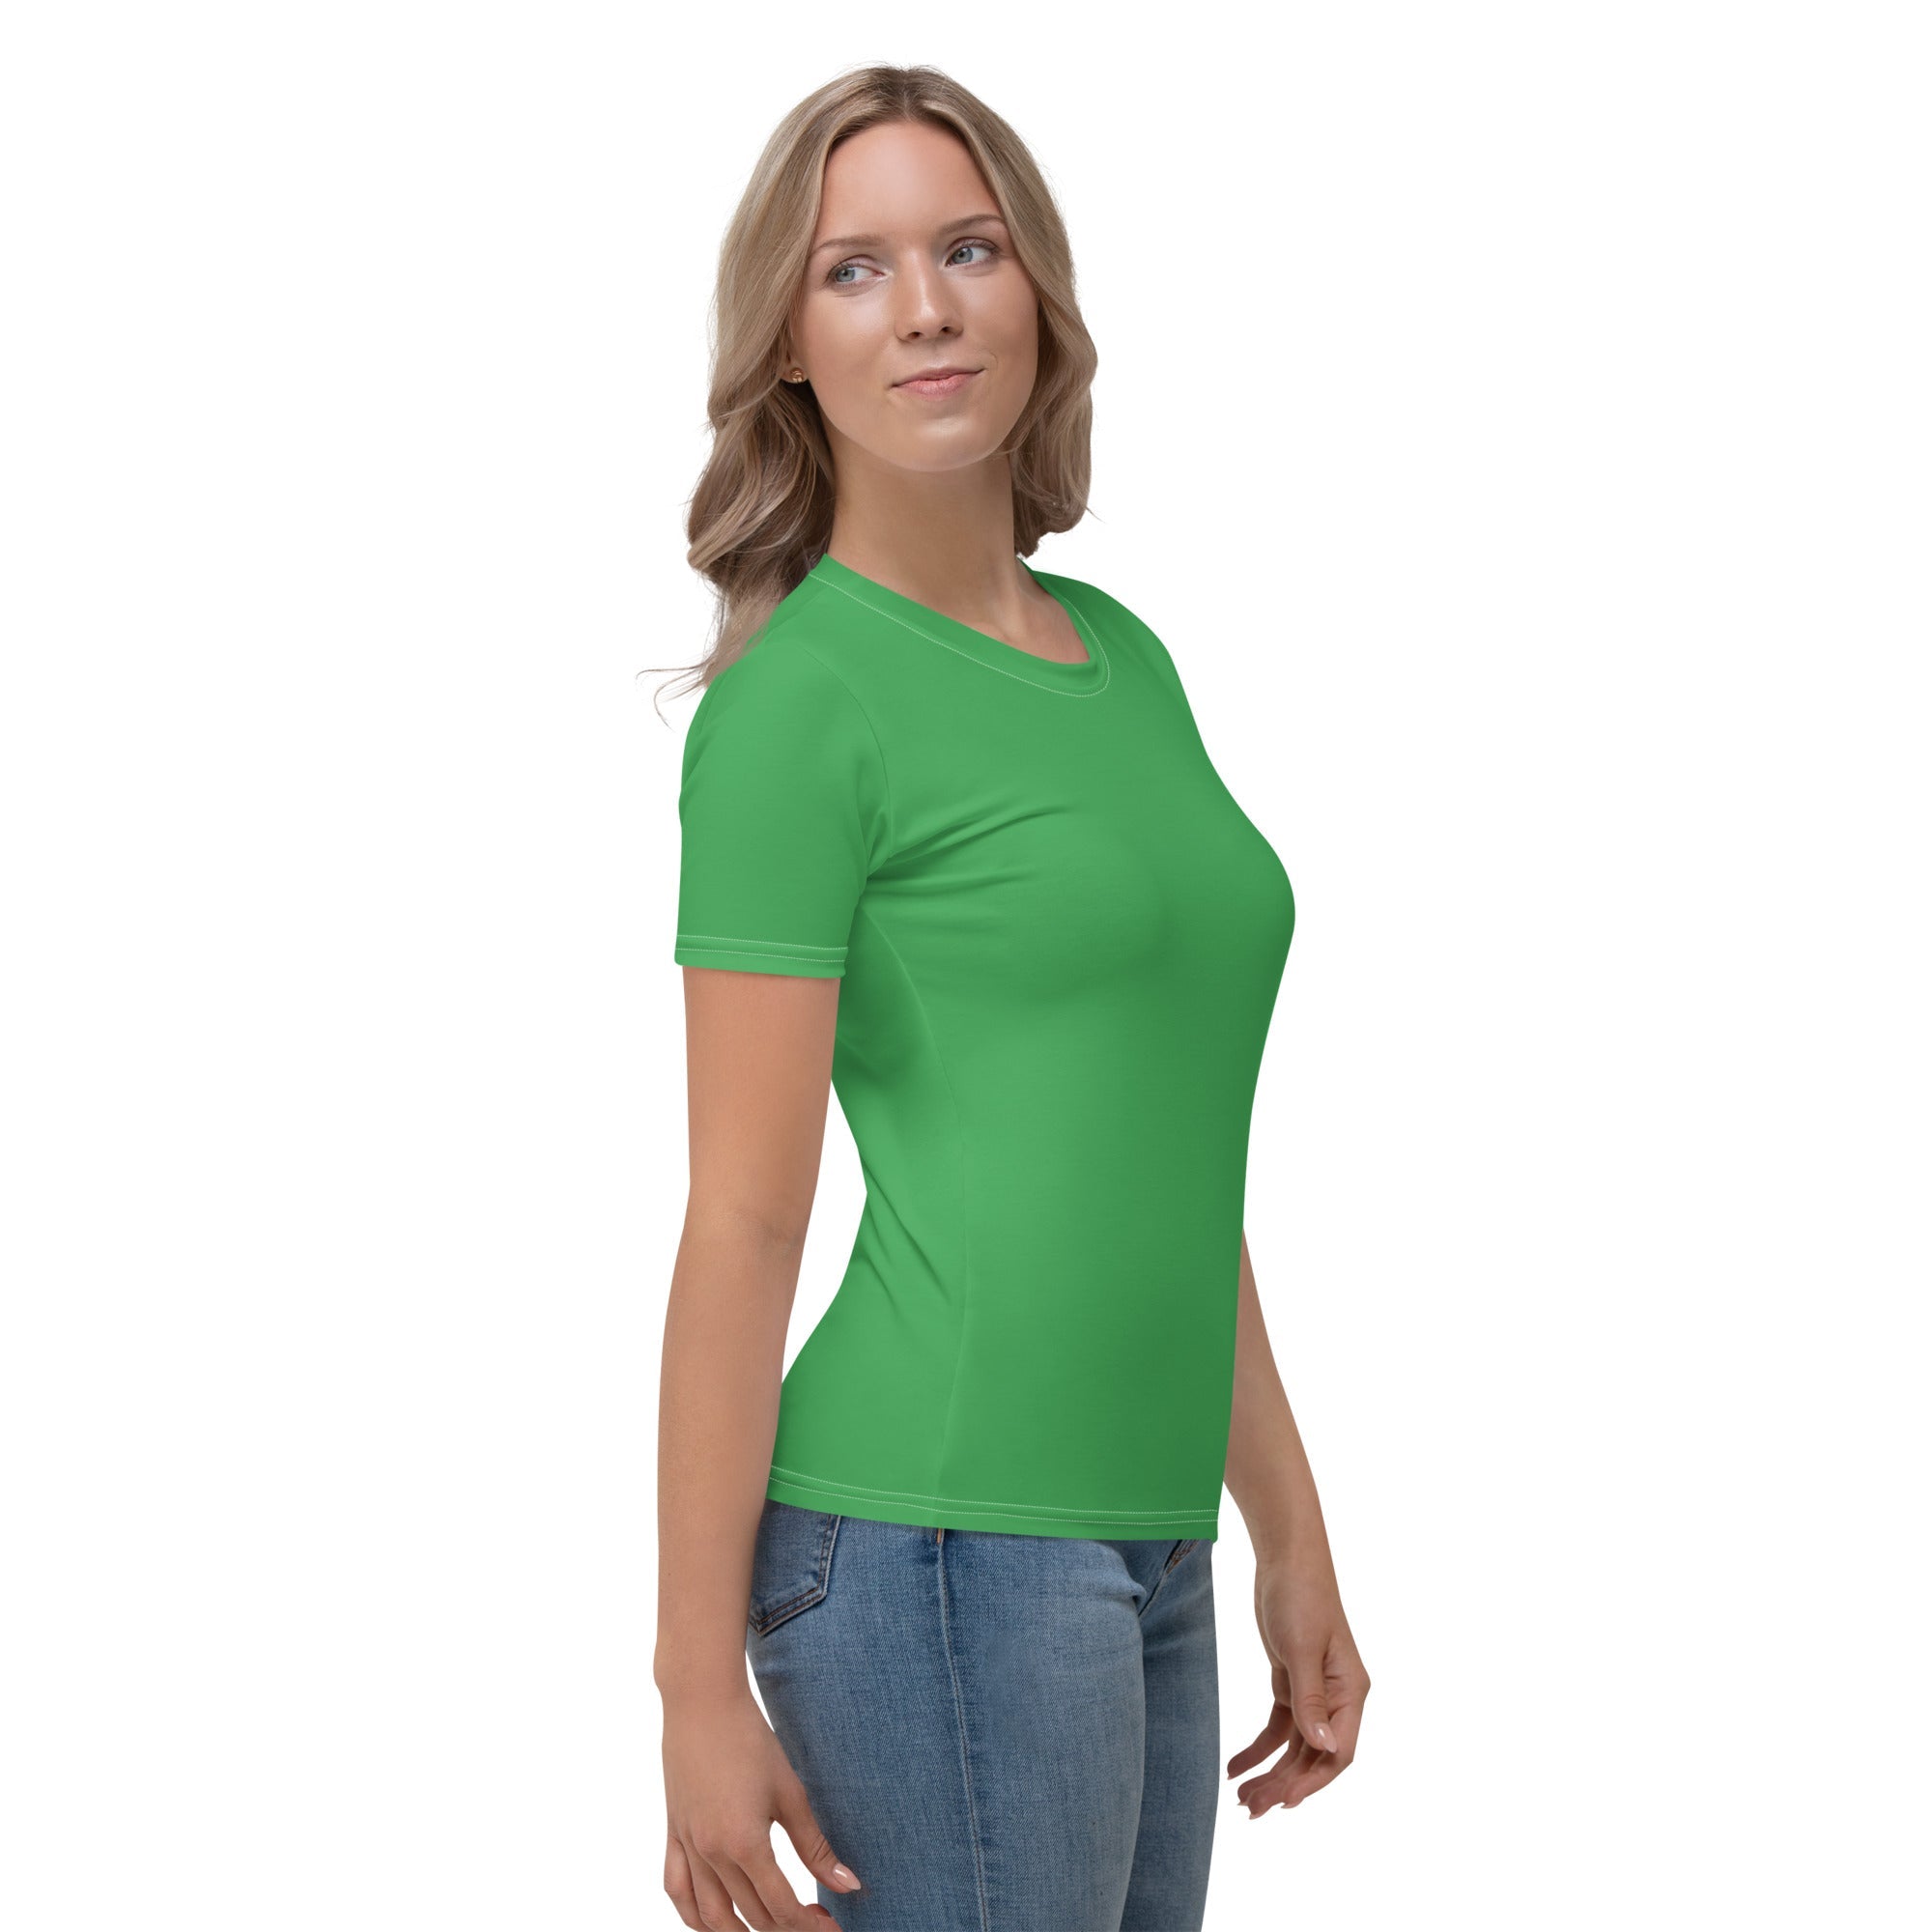 Clover Green T-shirt